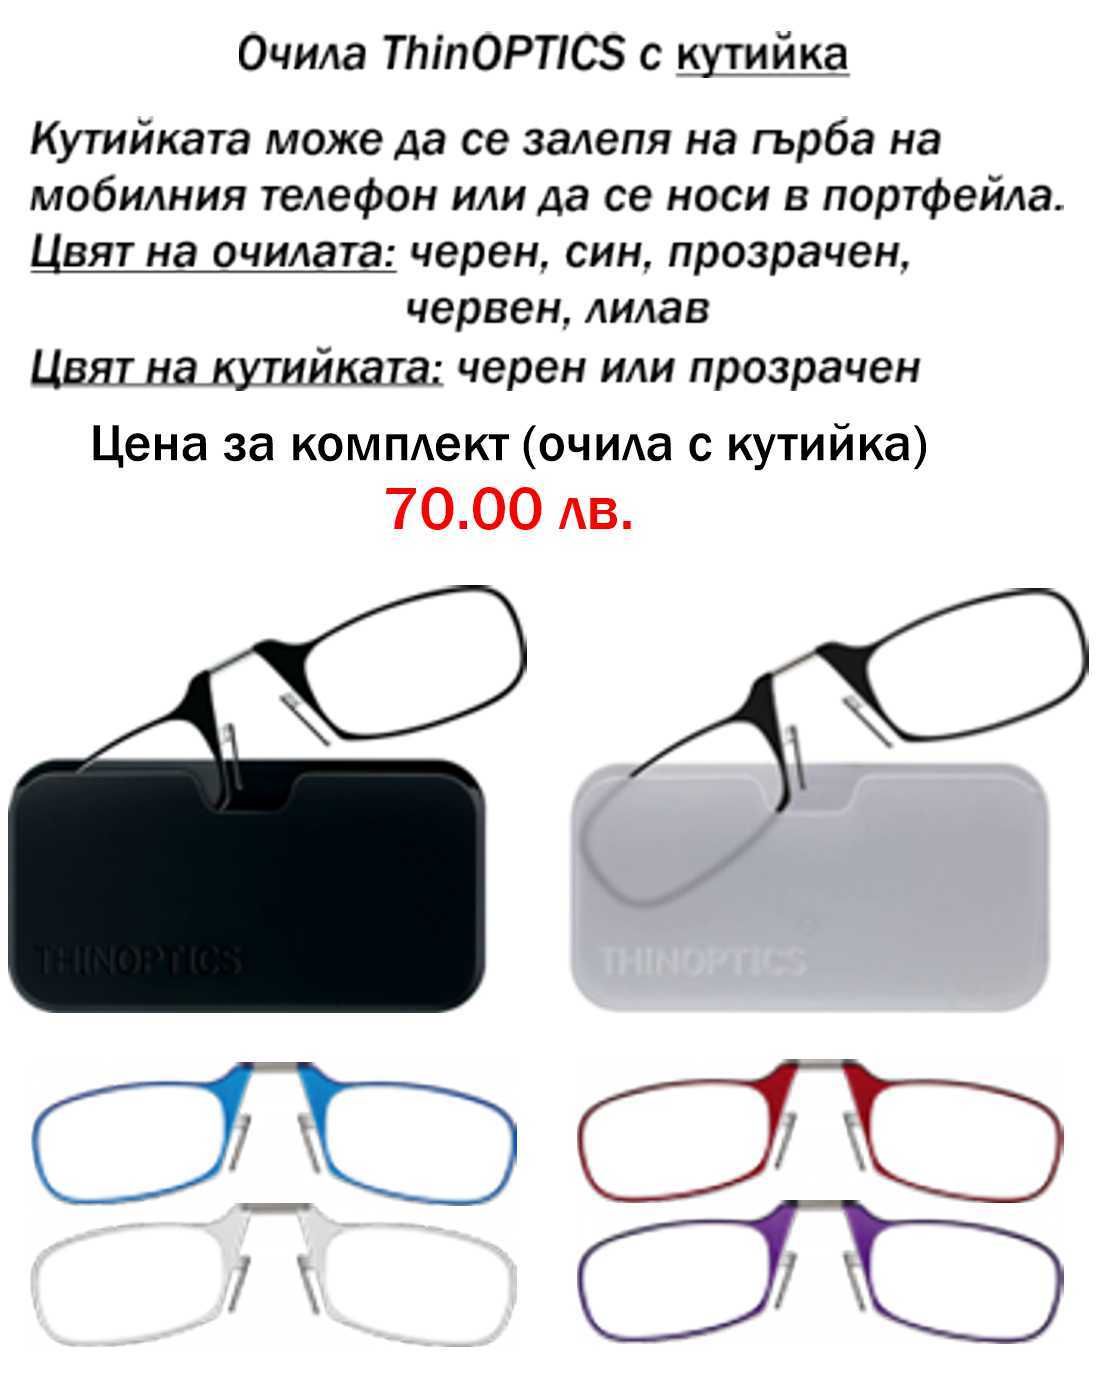 Оригинални очила ThinOPTICS, внос от САЩ за четене от +1.0 до +2.5